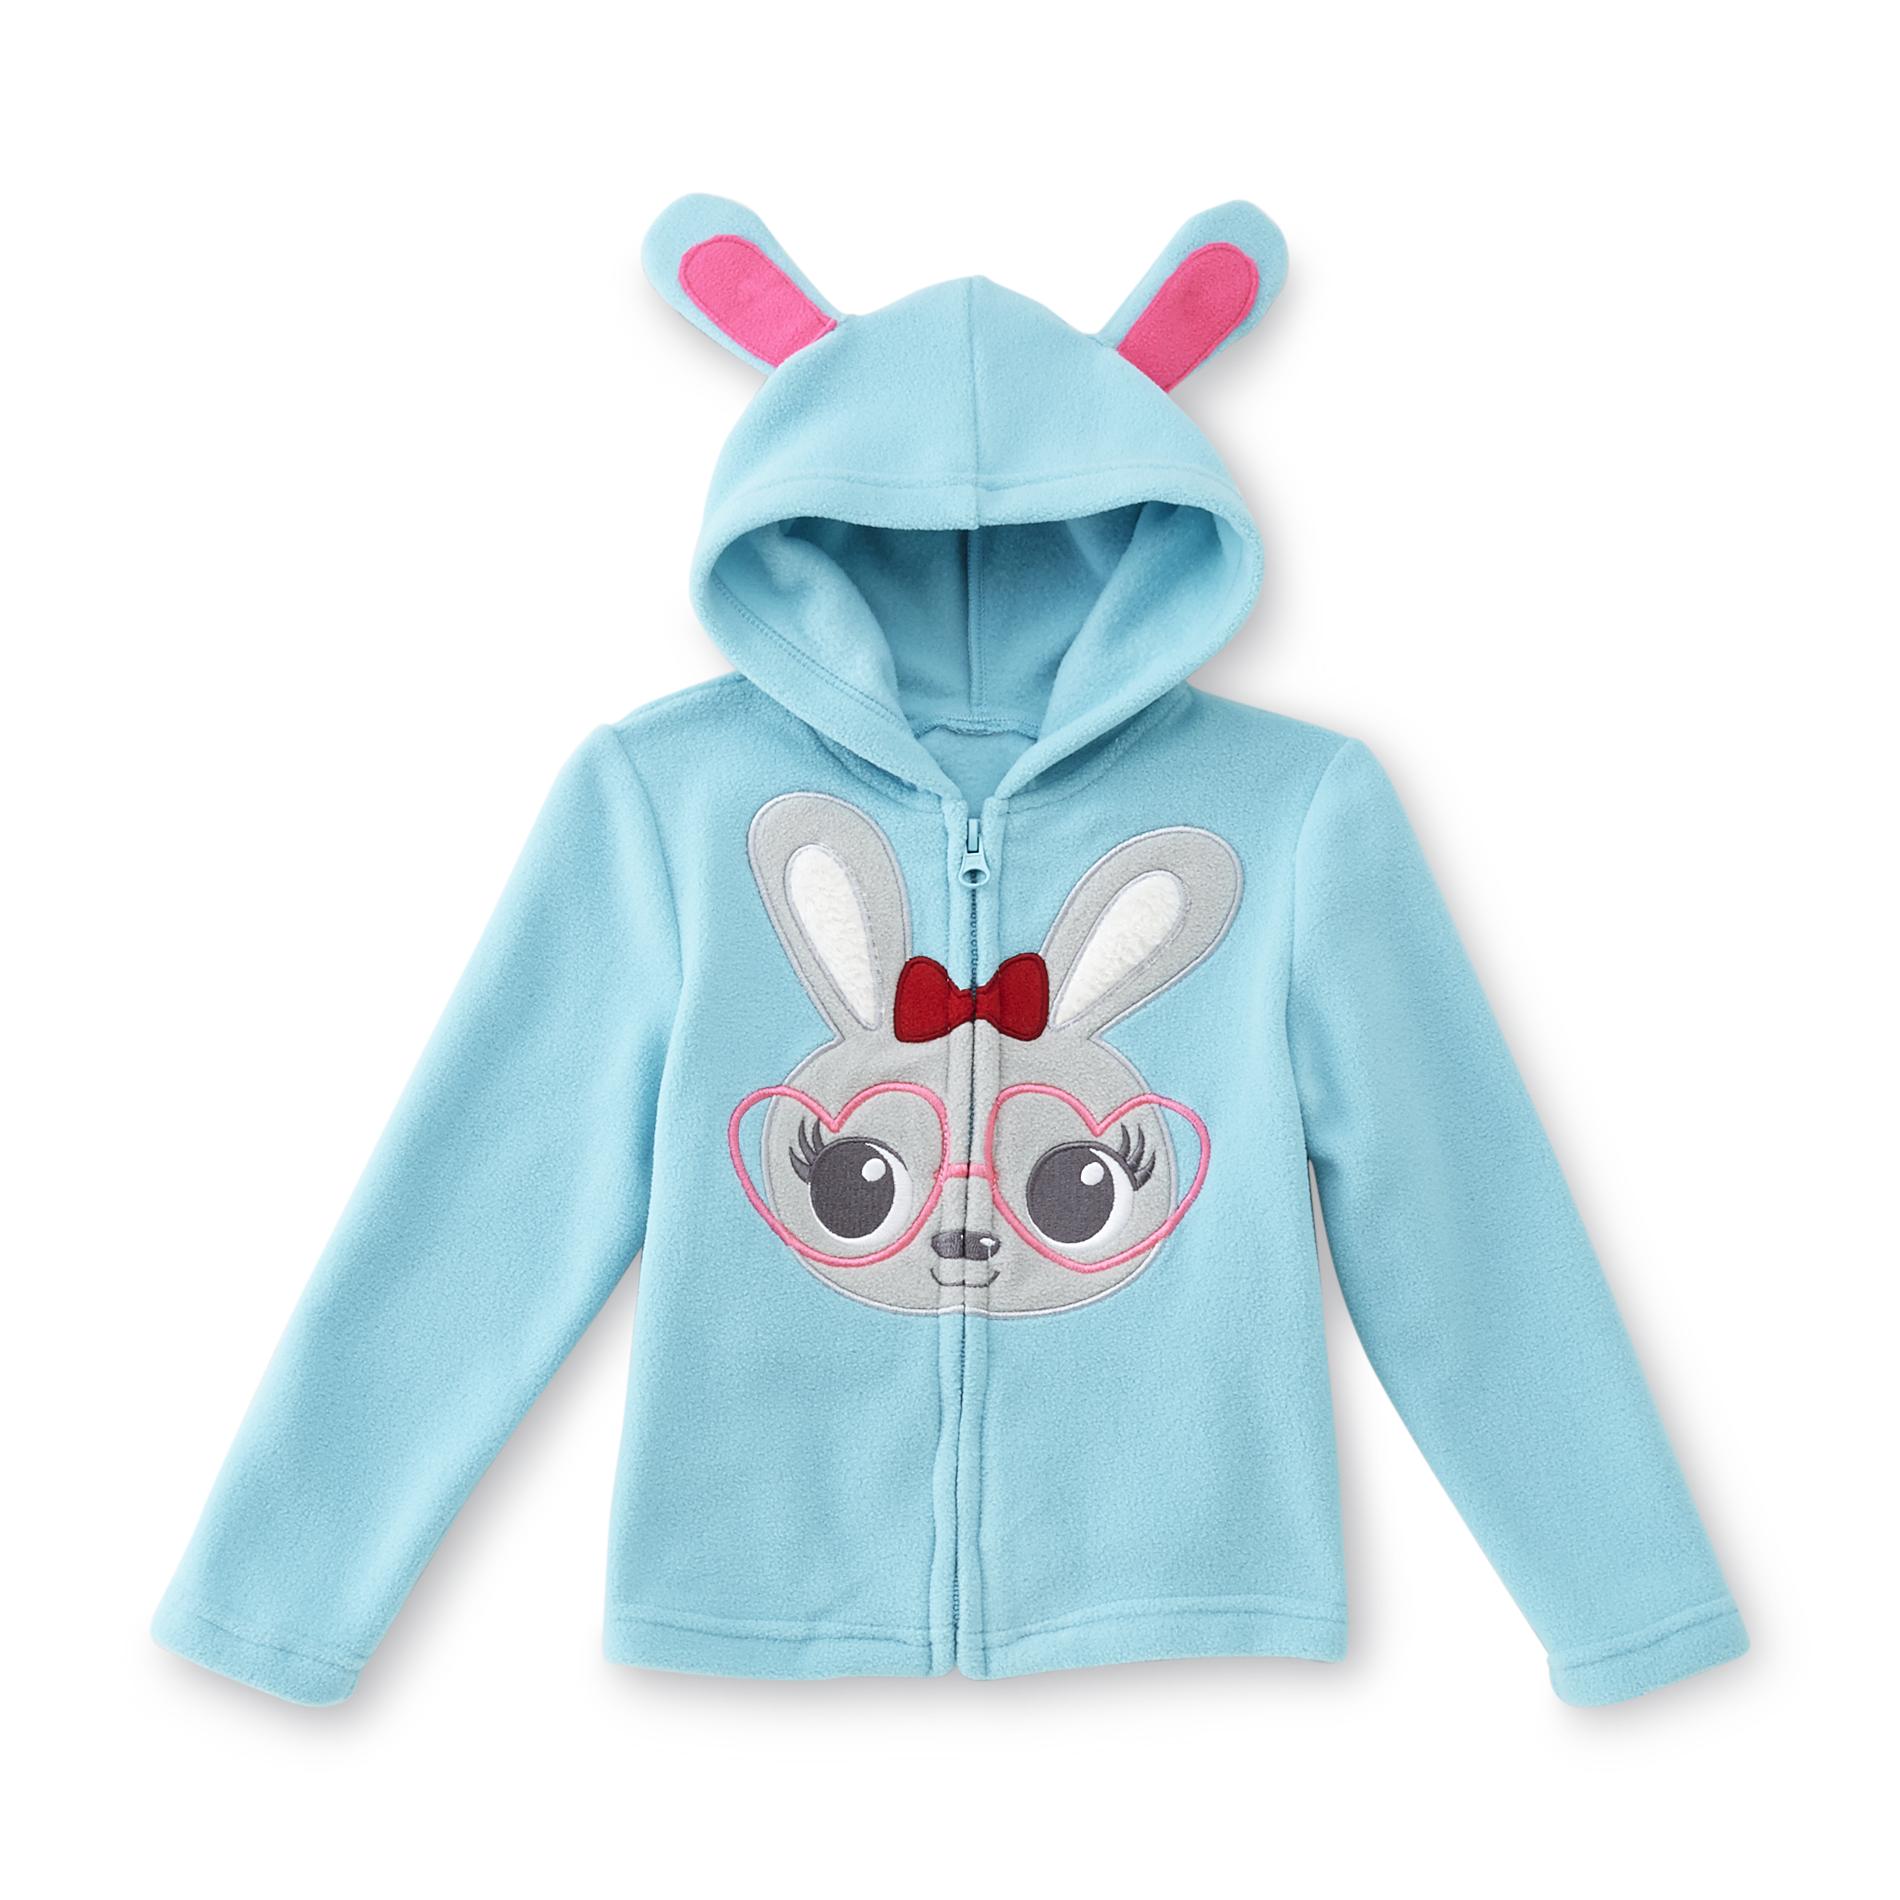 WonderKids Infant & Toddler Girl's Fleece Hoodie Jacket - Bunny